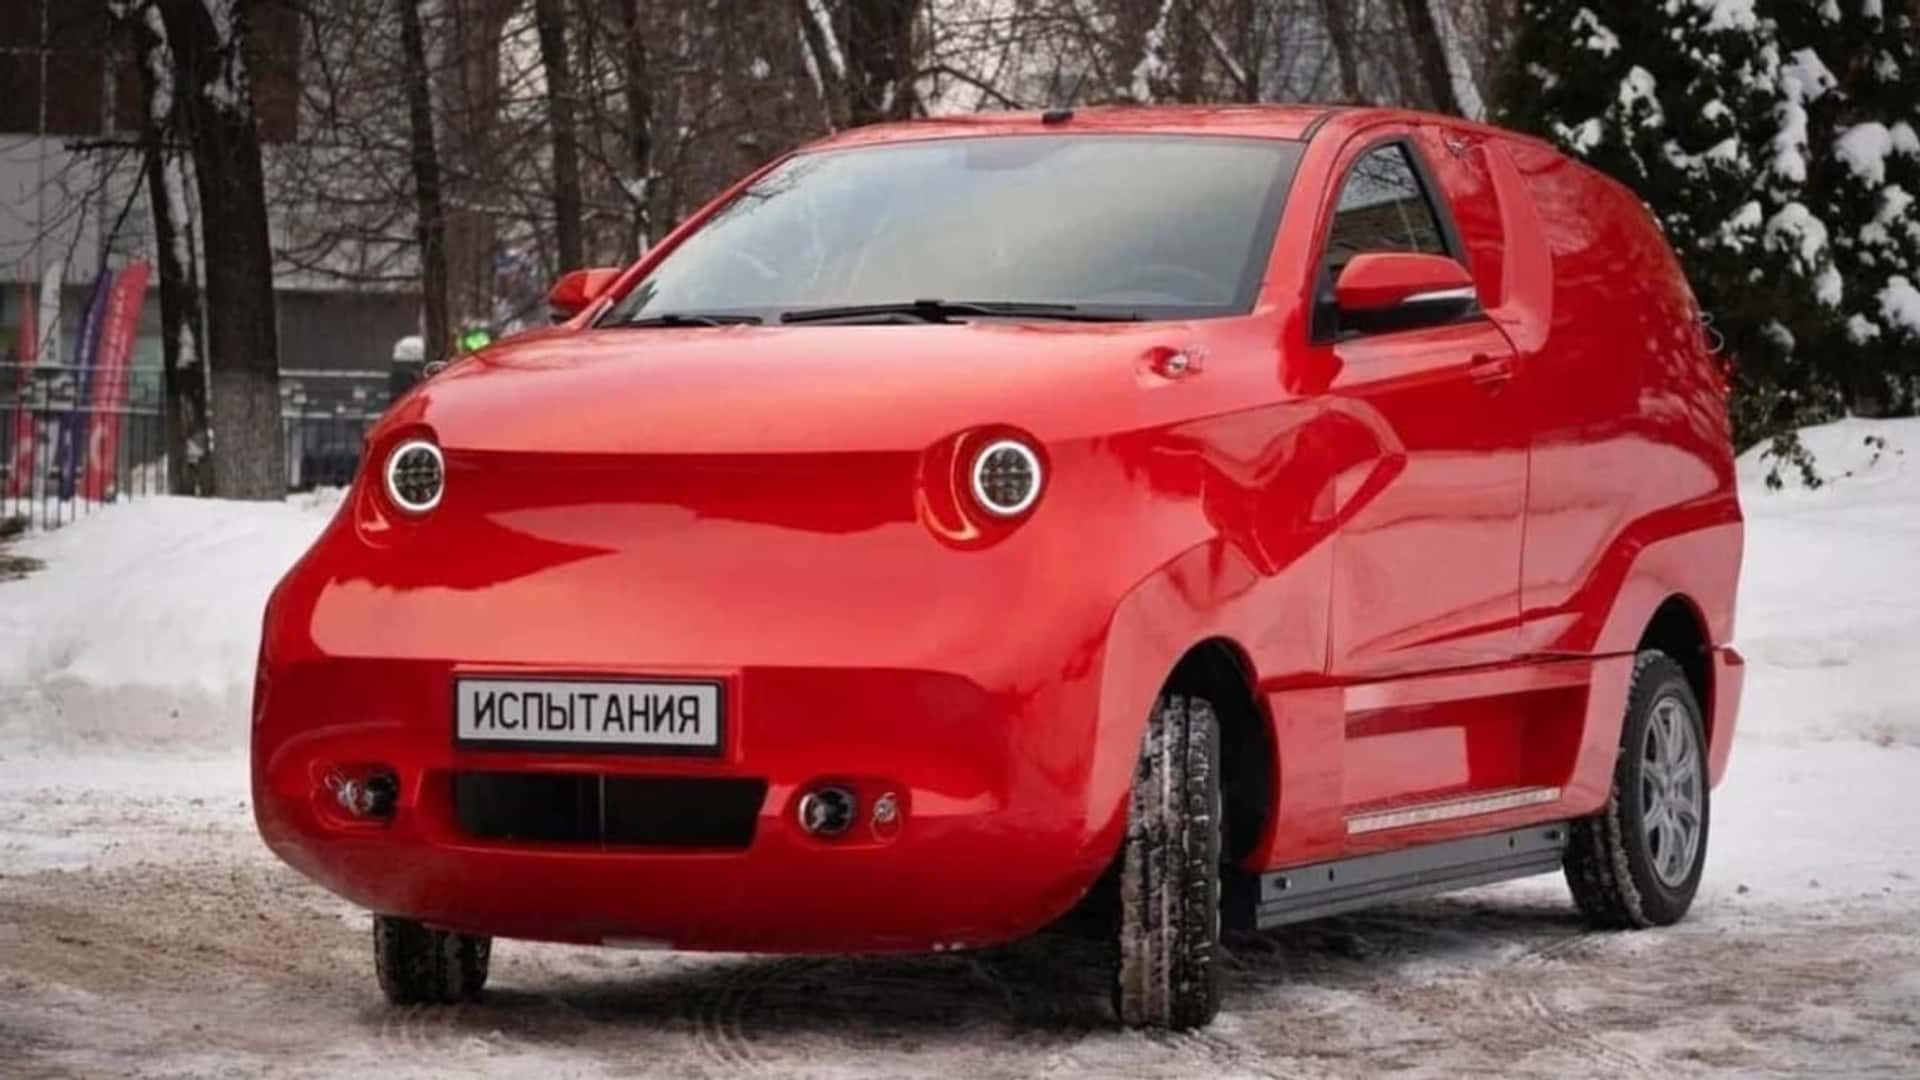 روسيا تقدم سيارة كهربائية جديدة كلياً بتصميم غريب وسيتم تصنيعها في مصنع بي ام دبليو السابق!